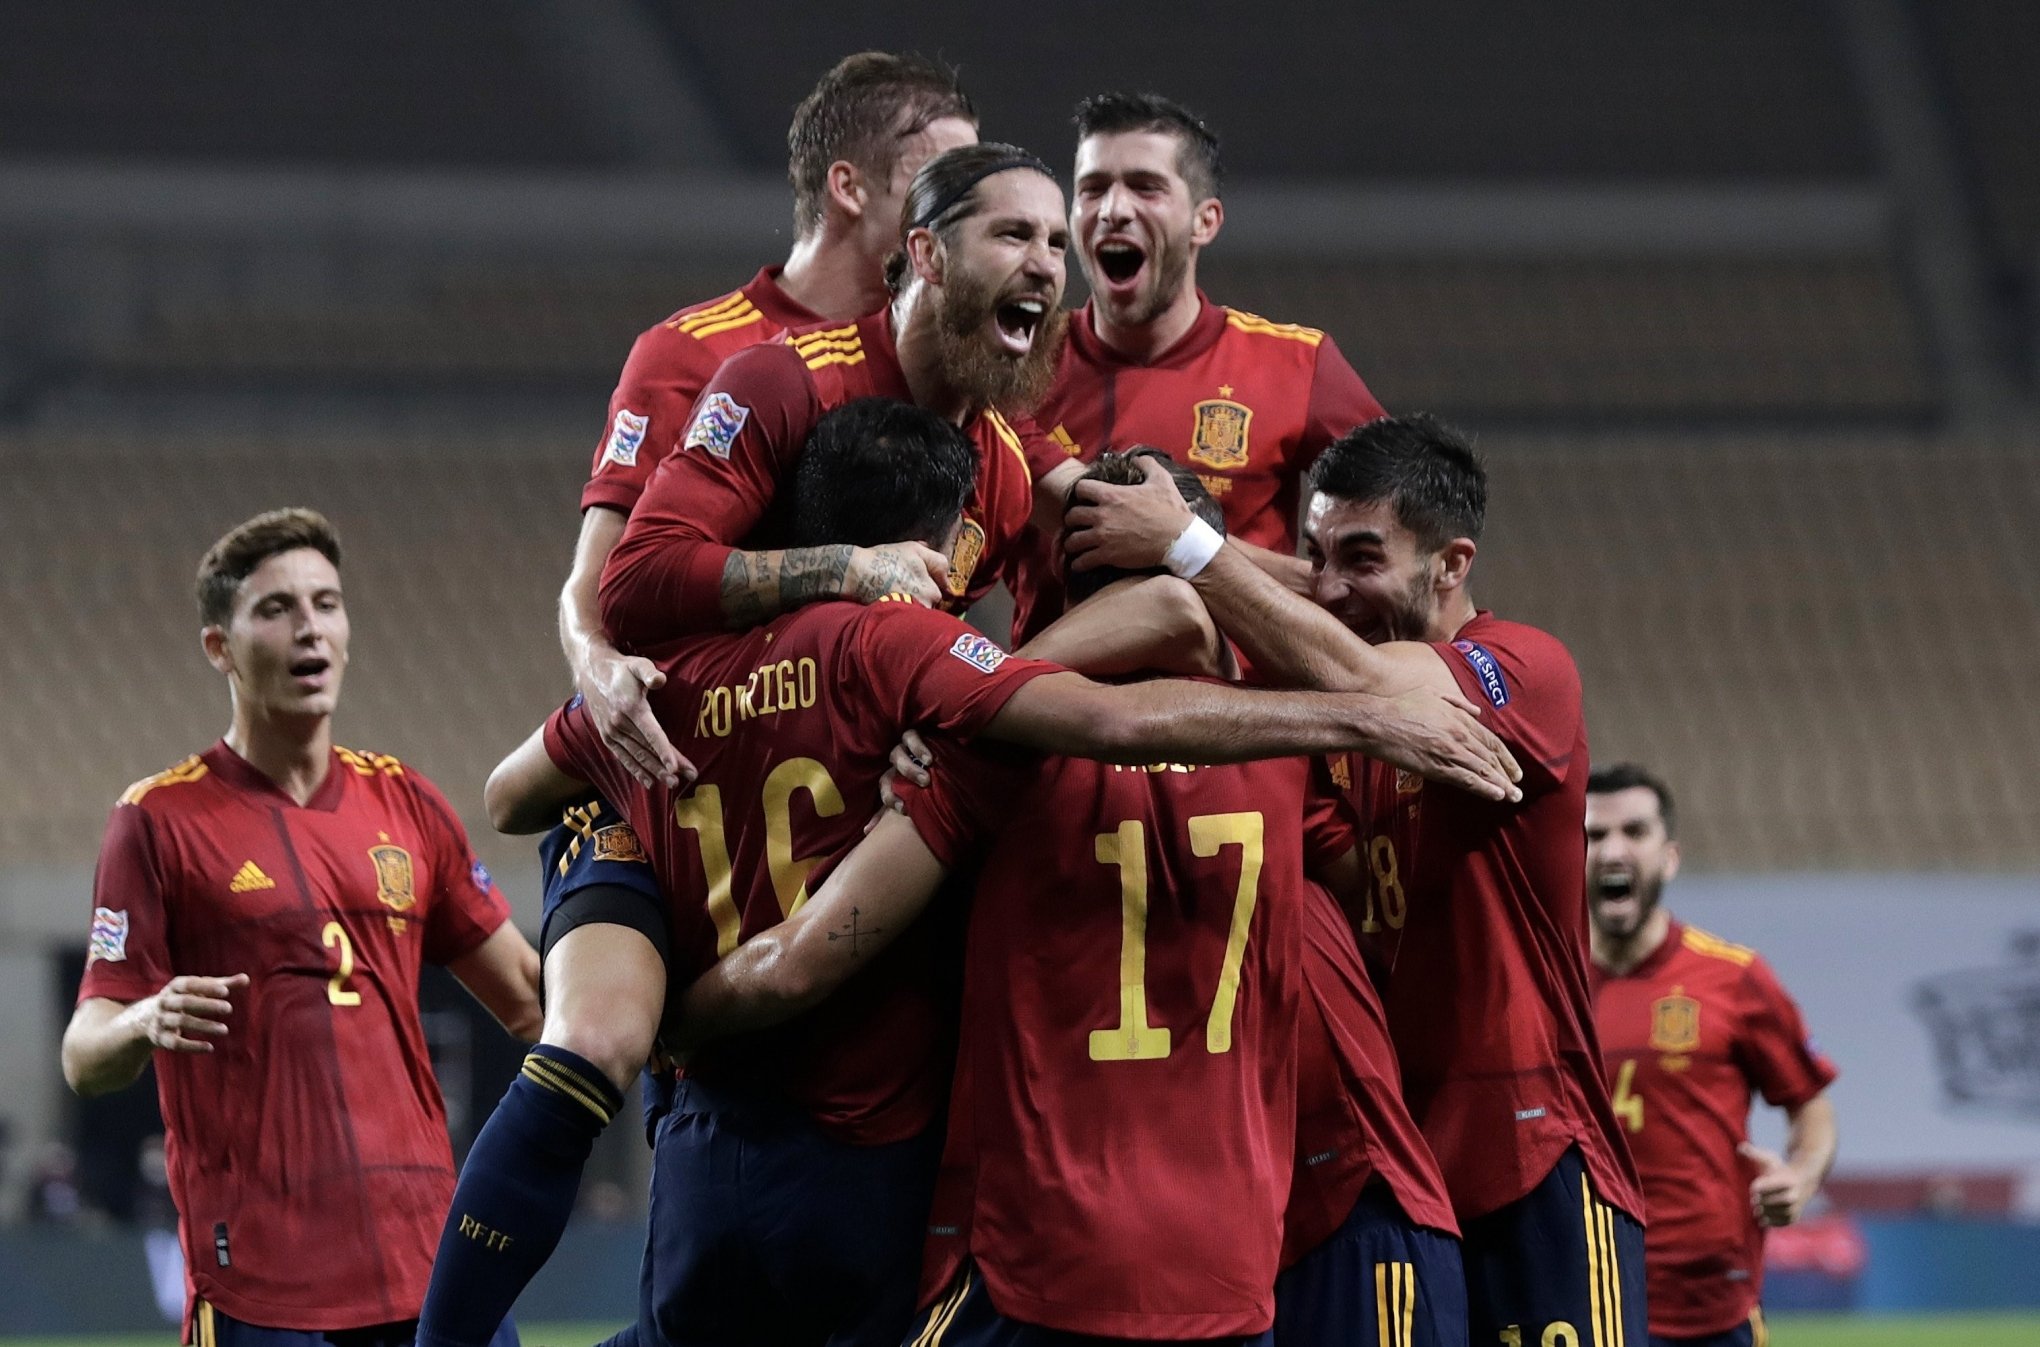 Espanha Da Show Faz 6 A 0 Na Alemanha E Avanca Na Liga Das Nacoes Esportes Jornal Vs